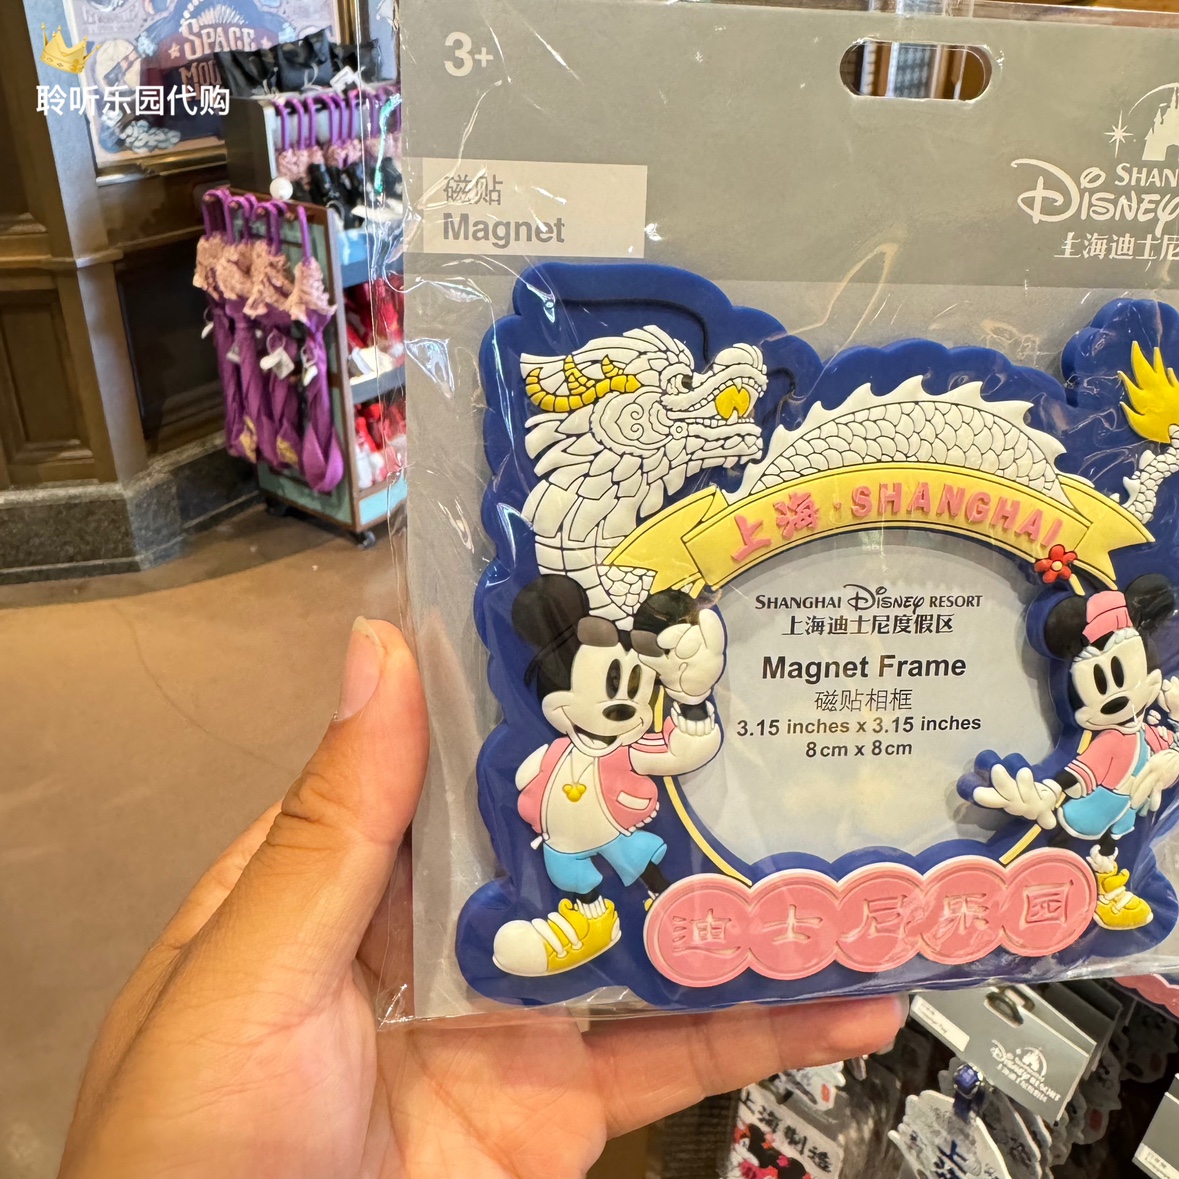 上海迪士尼国内代购上海系列米奇米妮龙年卡通可爱磁贴相框冰箱贴 - 图0